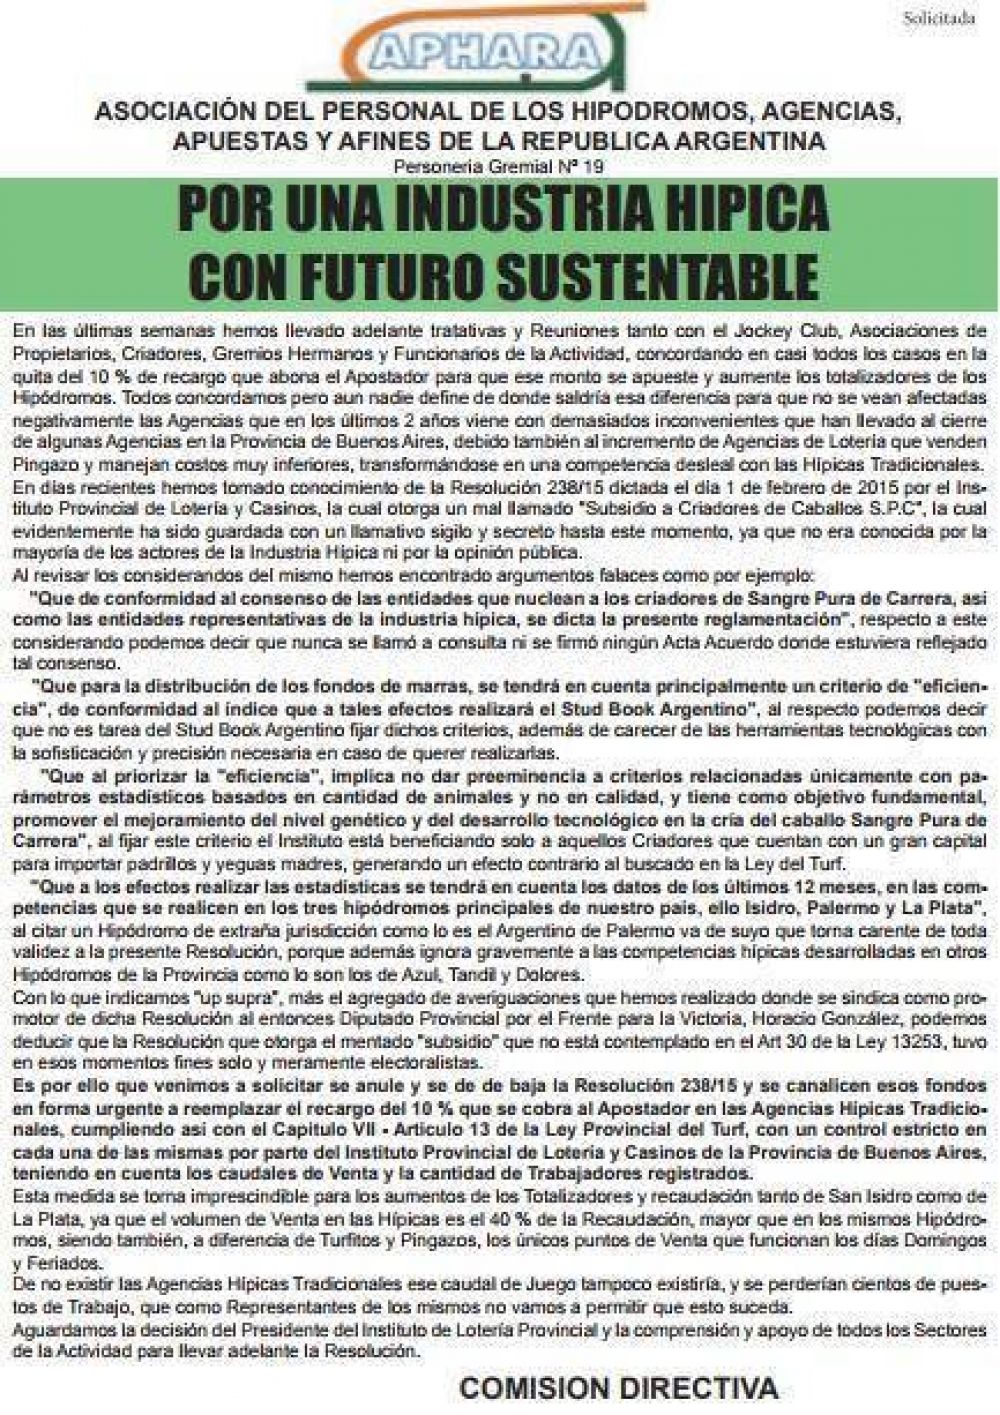 Reclaman soluciones de Vidal para tener una industria hpica con futuro sustentable